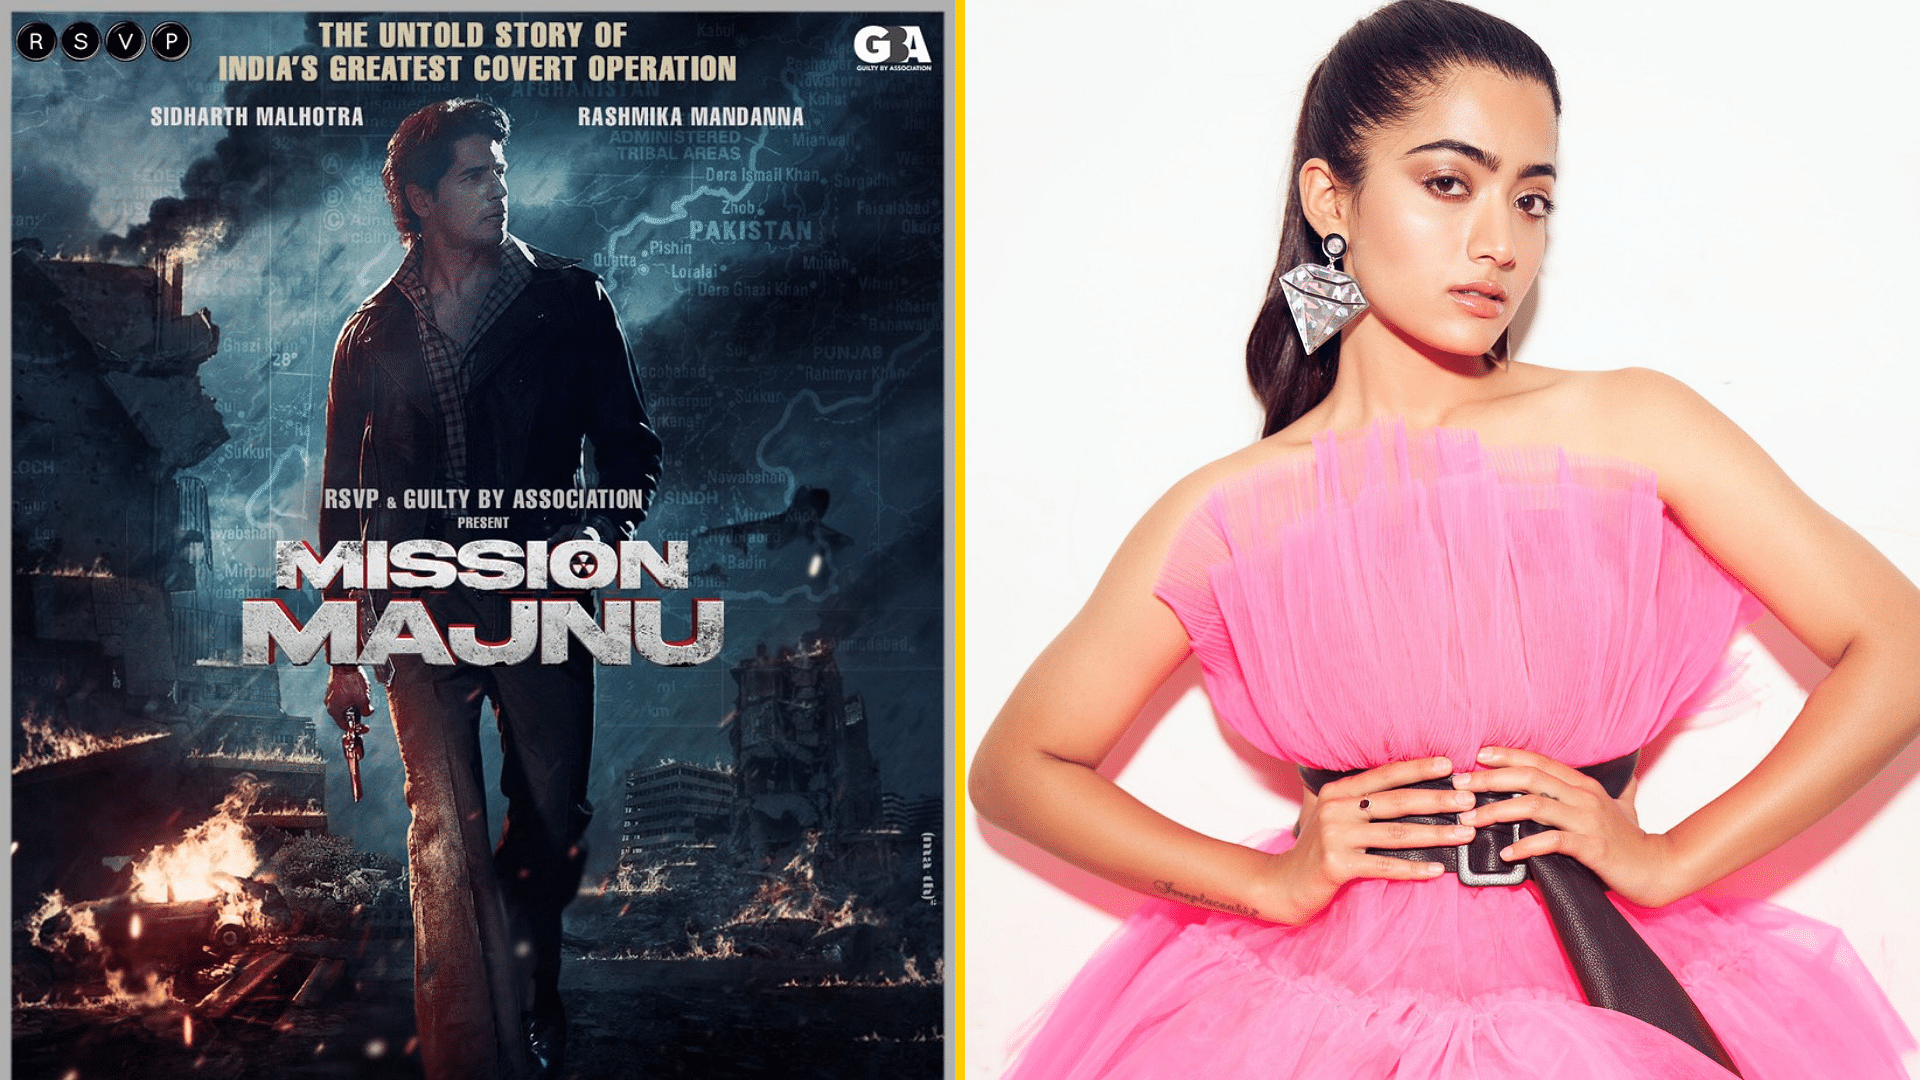 Rashmika Mandanna and Sidharth Malhotra will feature in <i>Mission Majnu</i>.